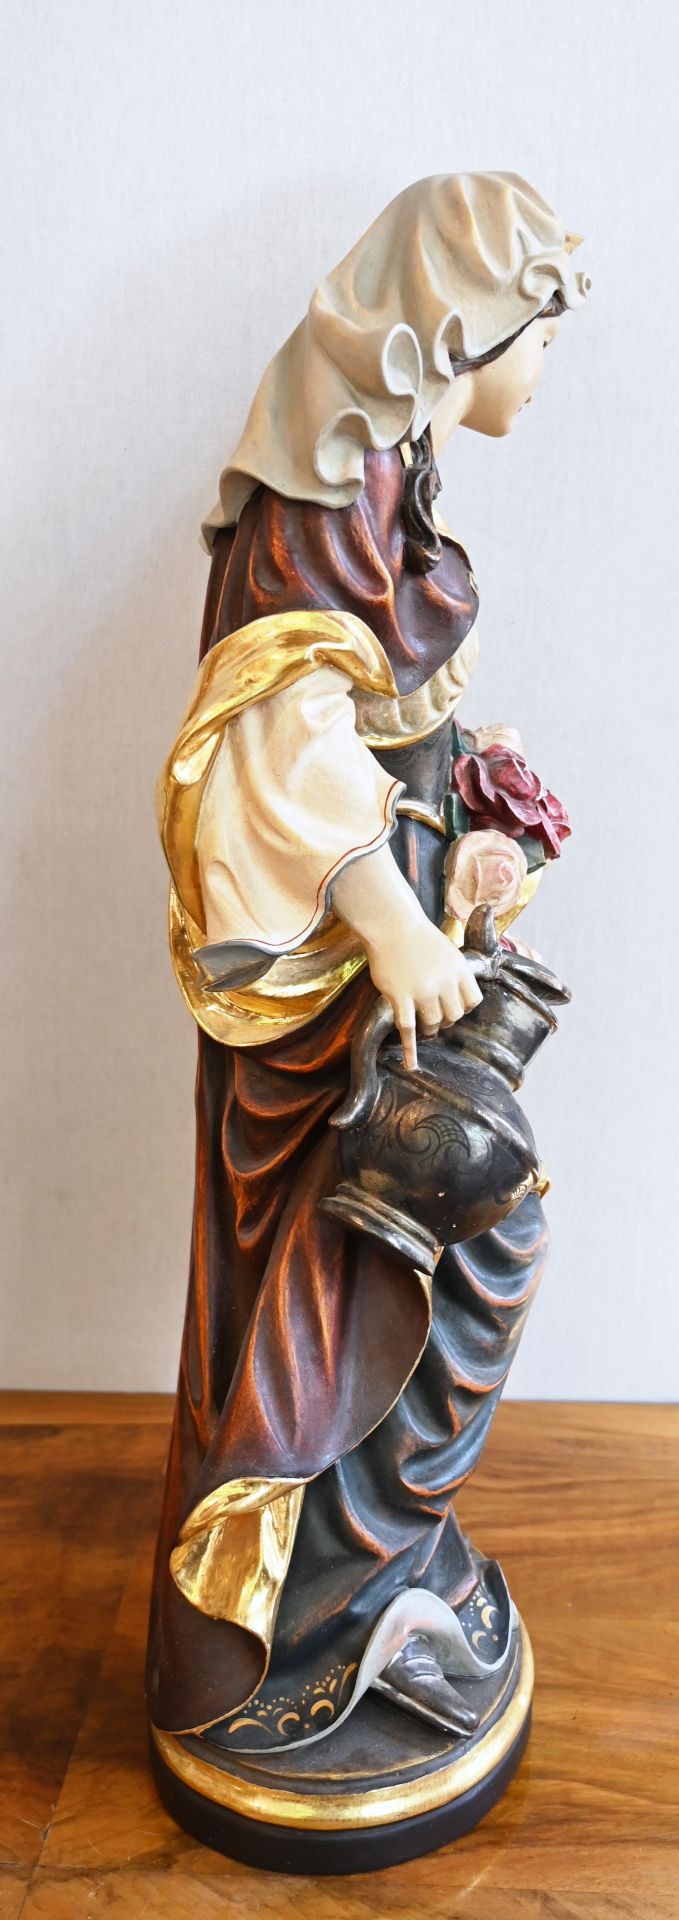 1 Holzfigur am Boden bez. C. NOCKER "Heilige Elisabeth mit Rosen" farbig gefasst, H ca. 80cm, min. b - Image 2 of 4